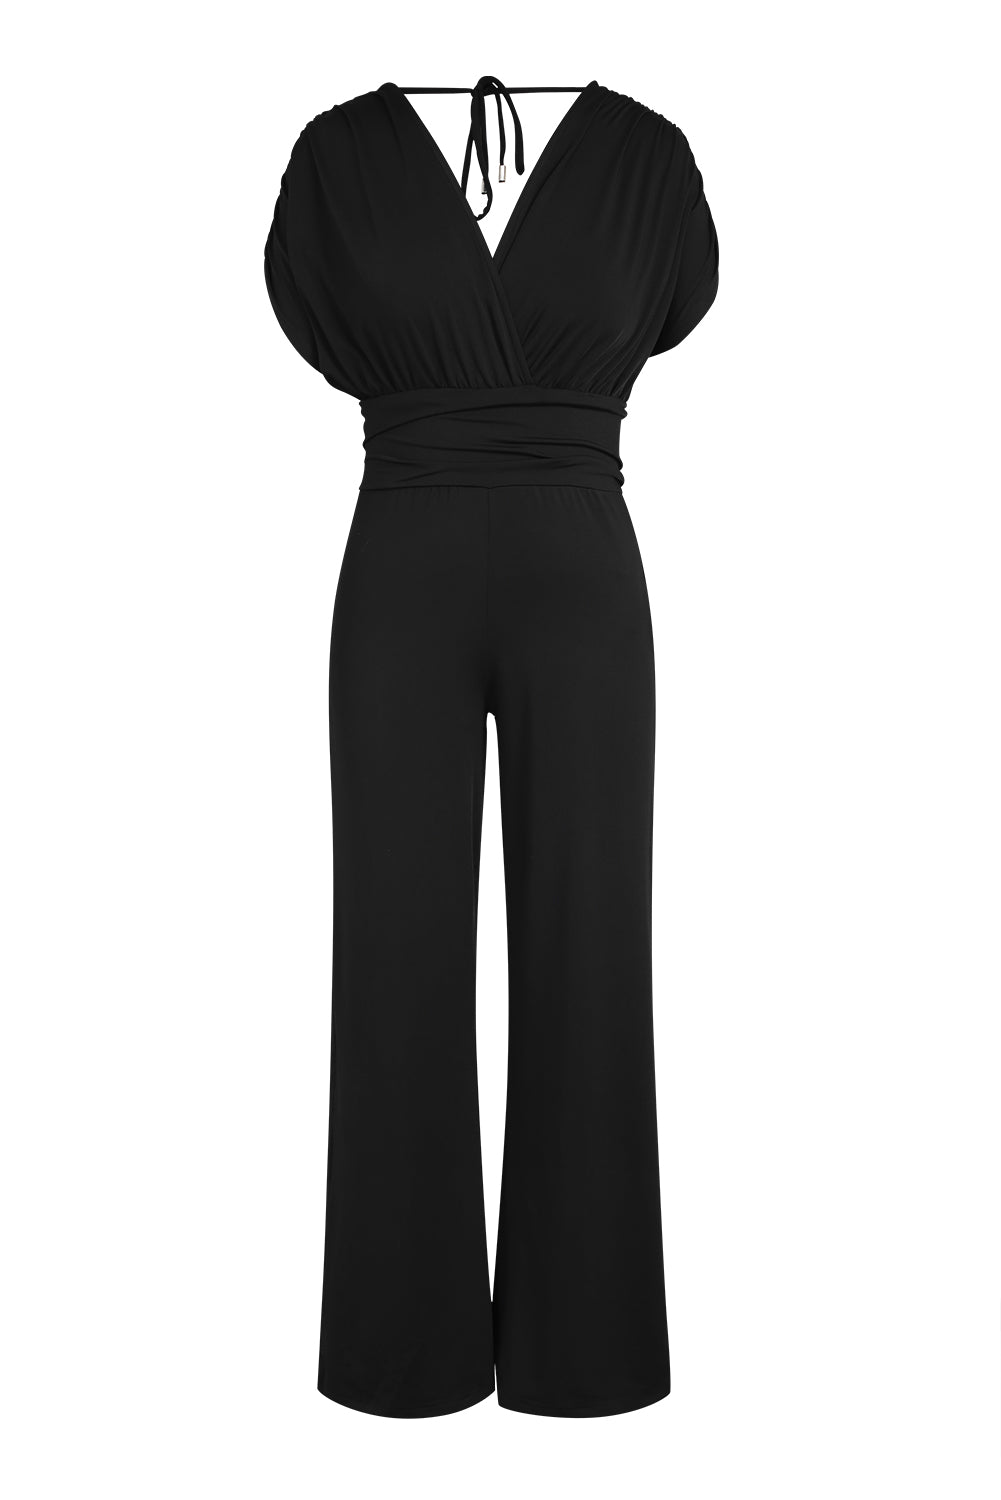 Black V-Neck Dolman Sleeves Wide Leg Jumpsuit